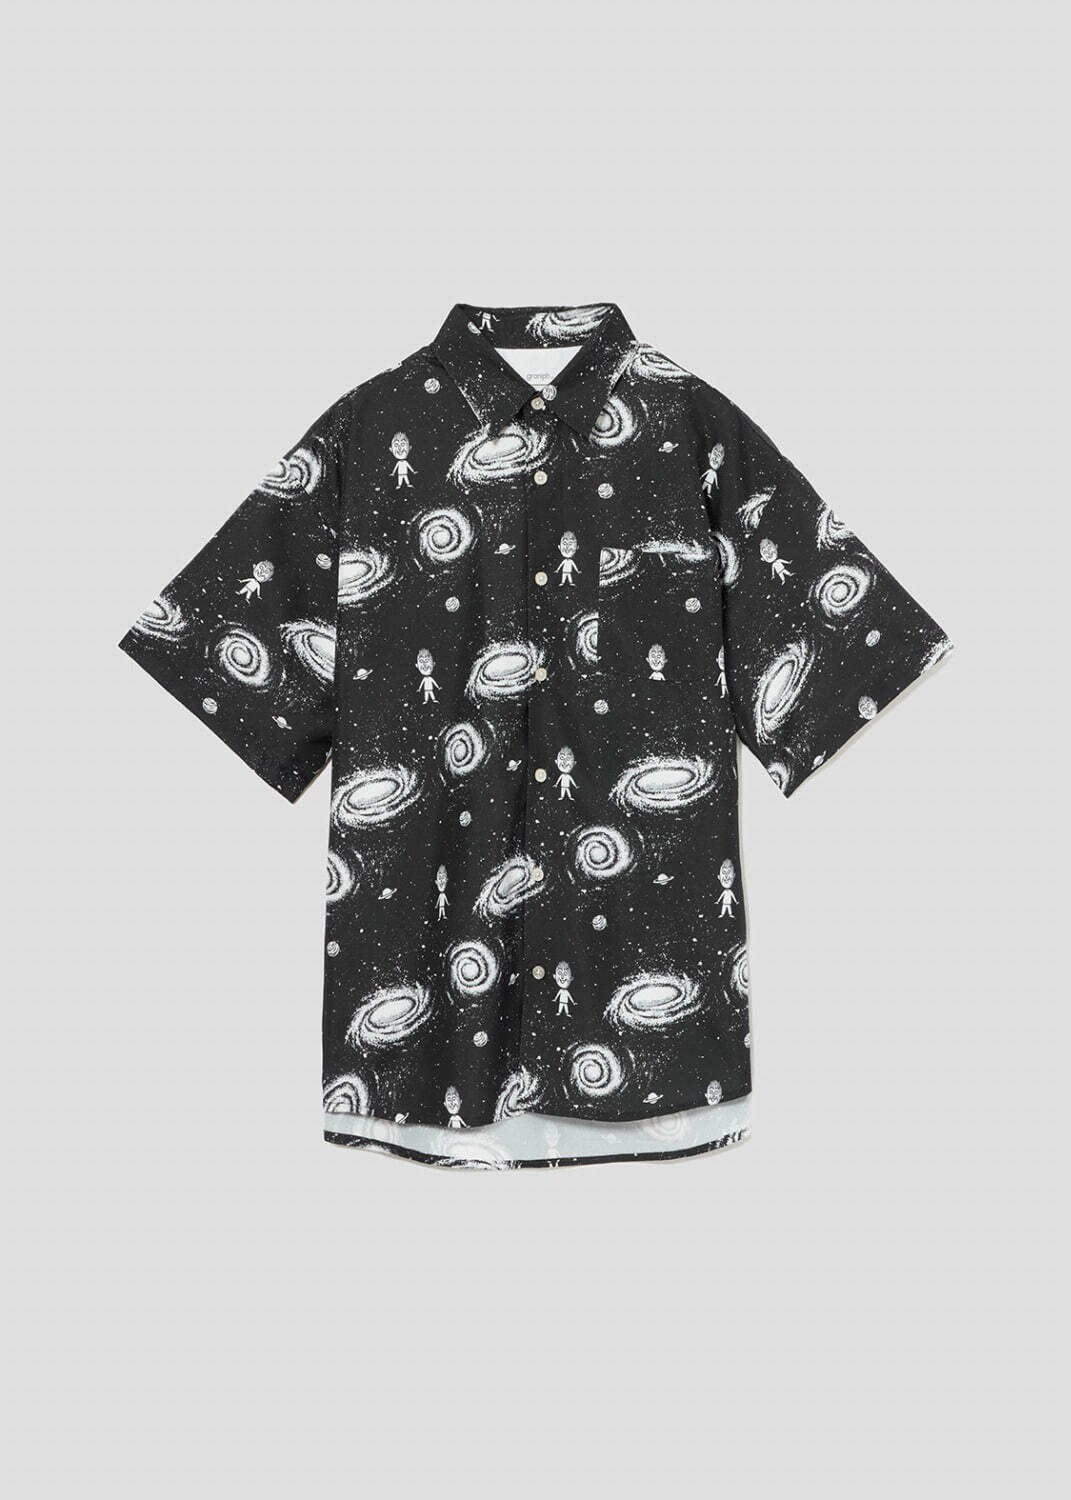 ルーズフィット半袖シャツ(7万5千円の宇宙) 6,900円